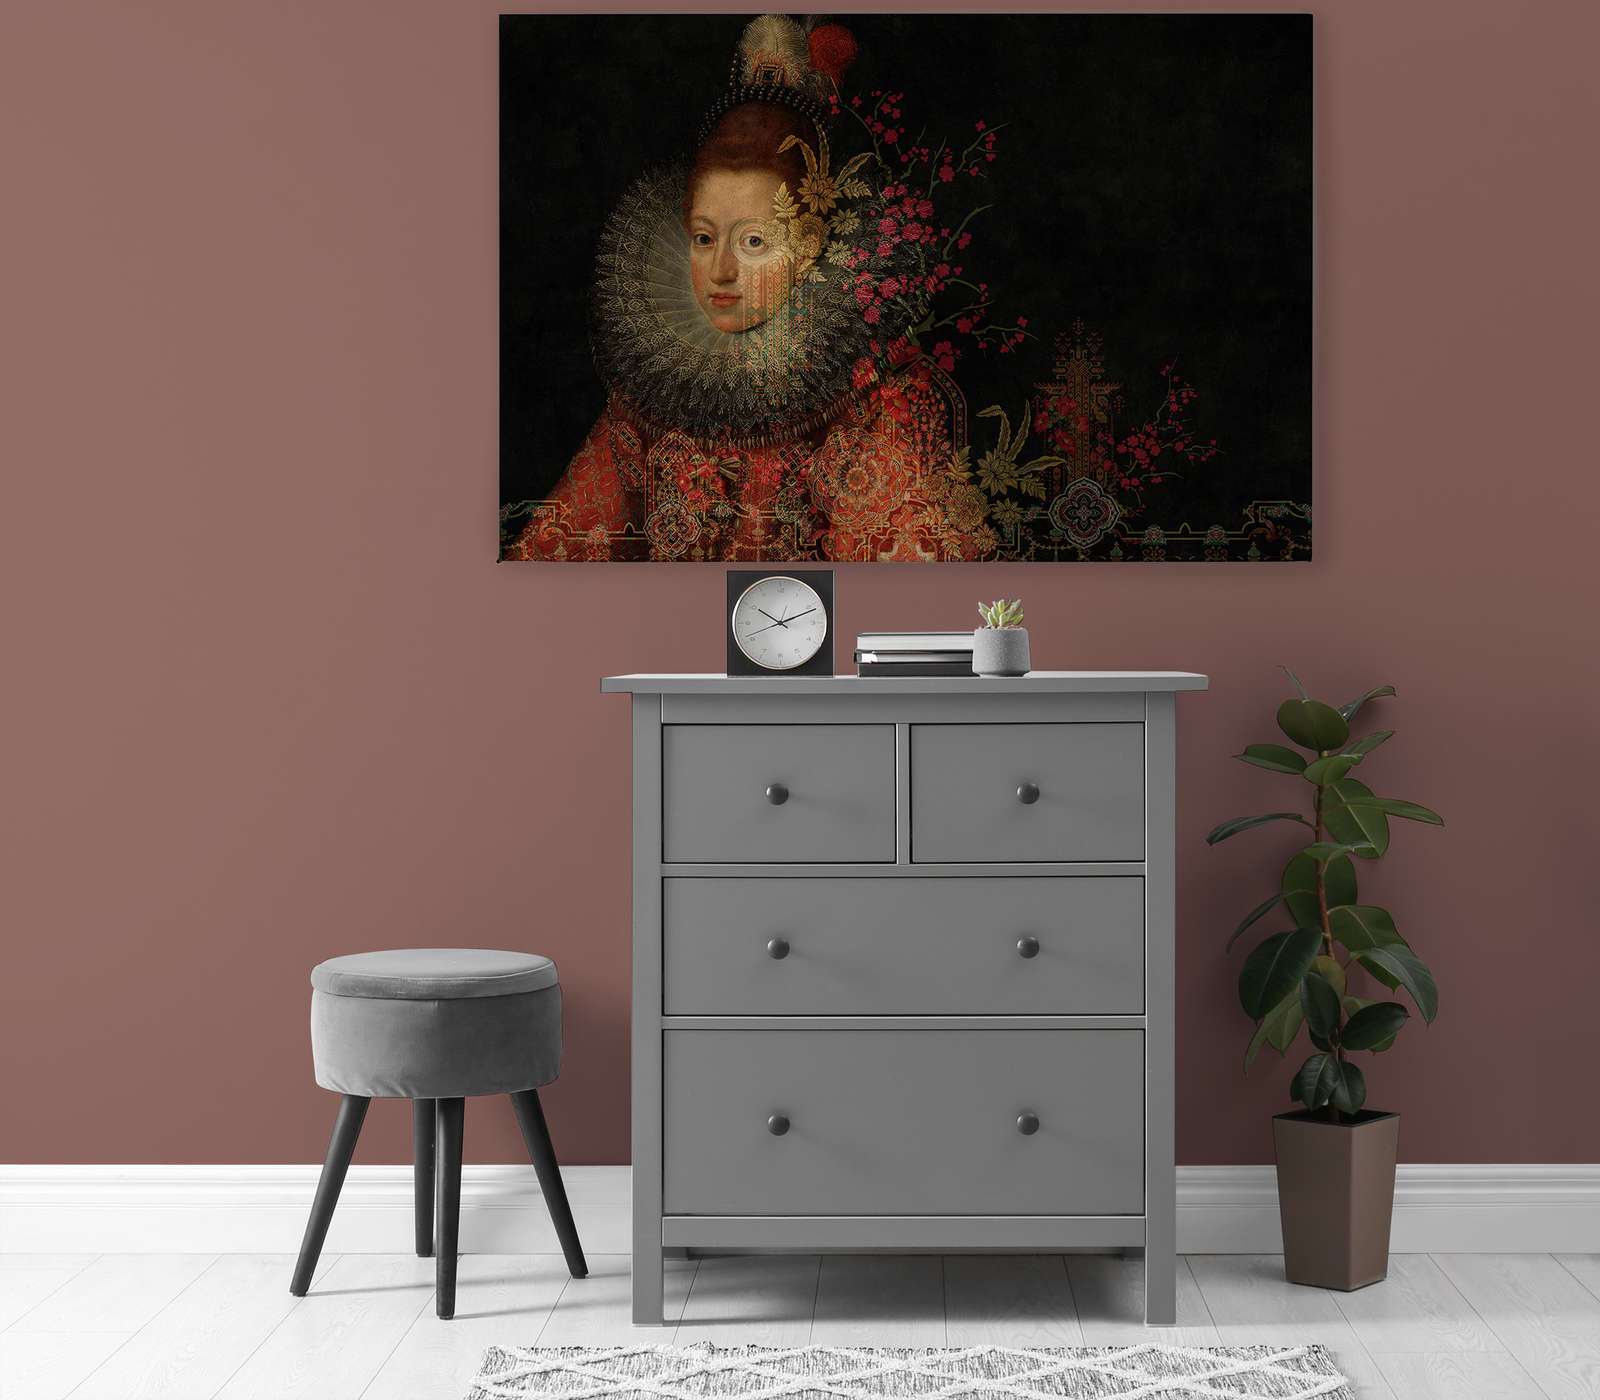             In the Gallery 1 - Toile Peinture Classique & Fleurs Graphiques - 1,20 m x 0,80 m
        